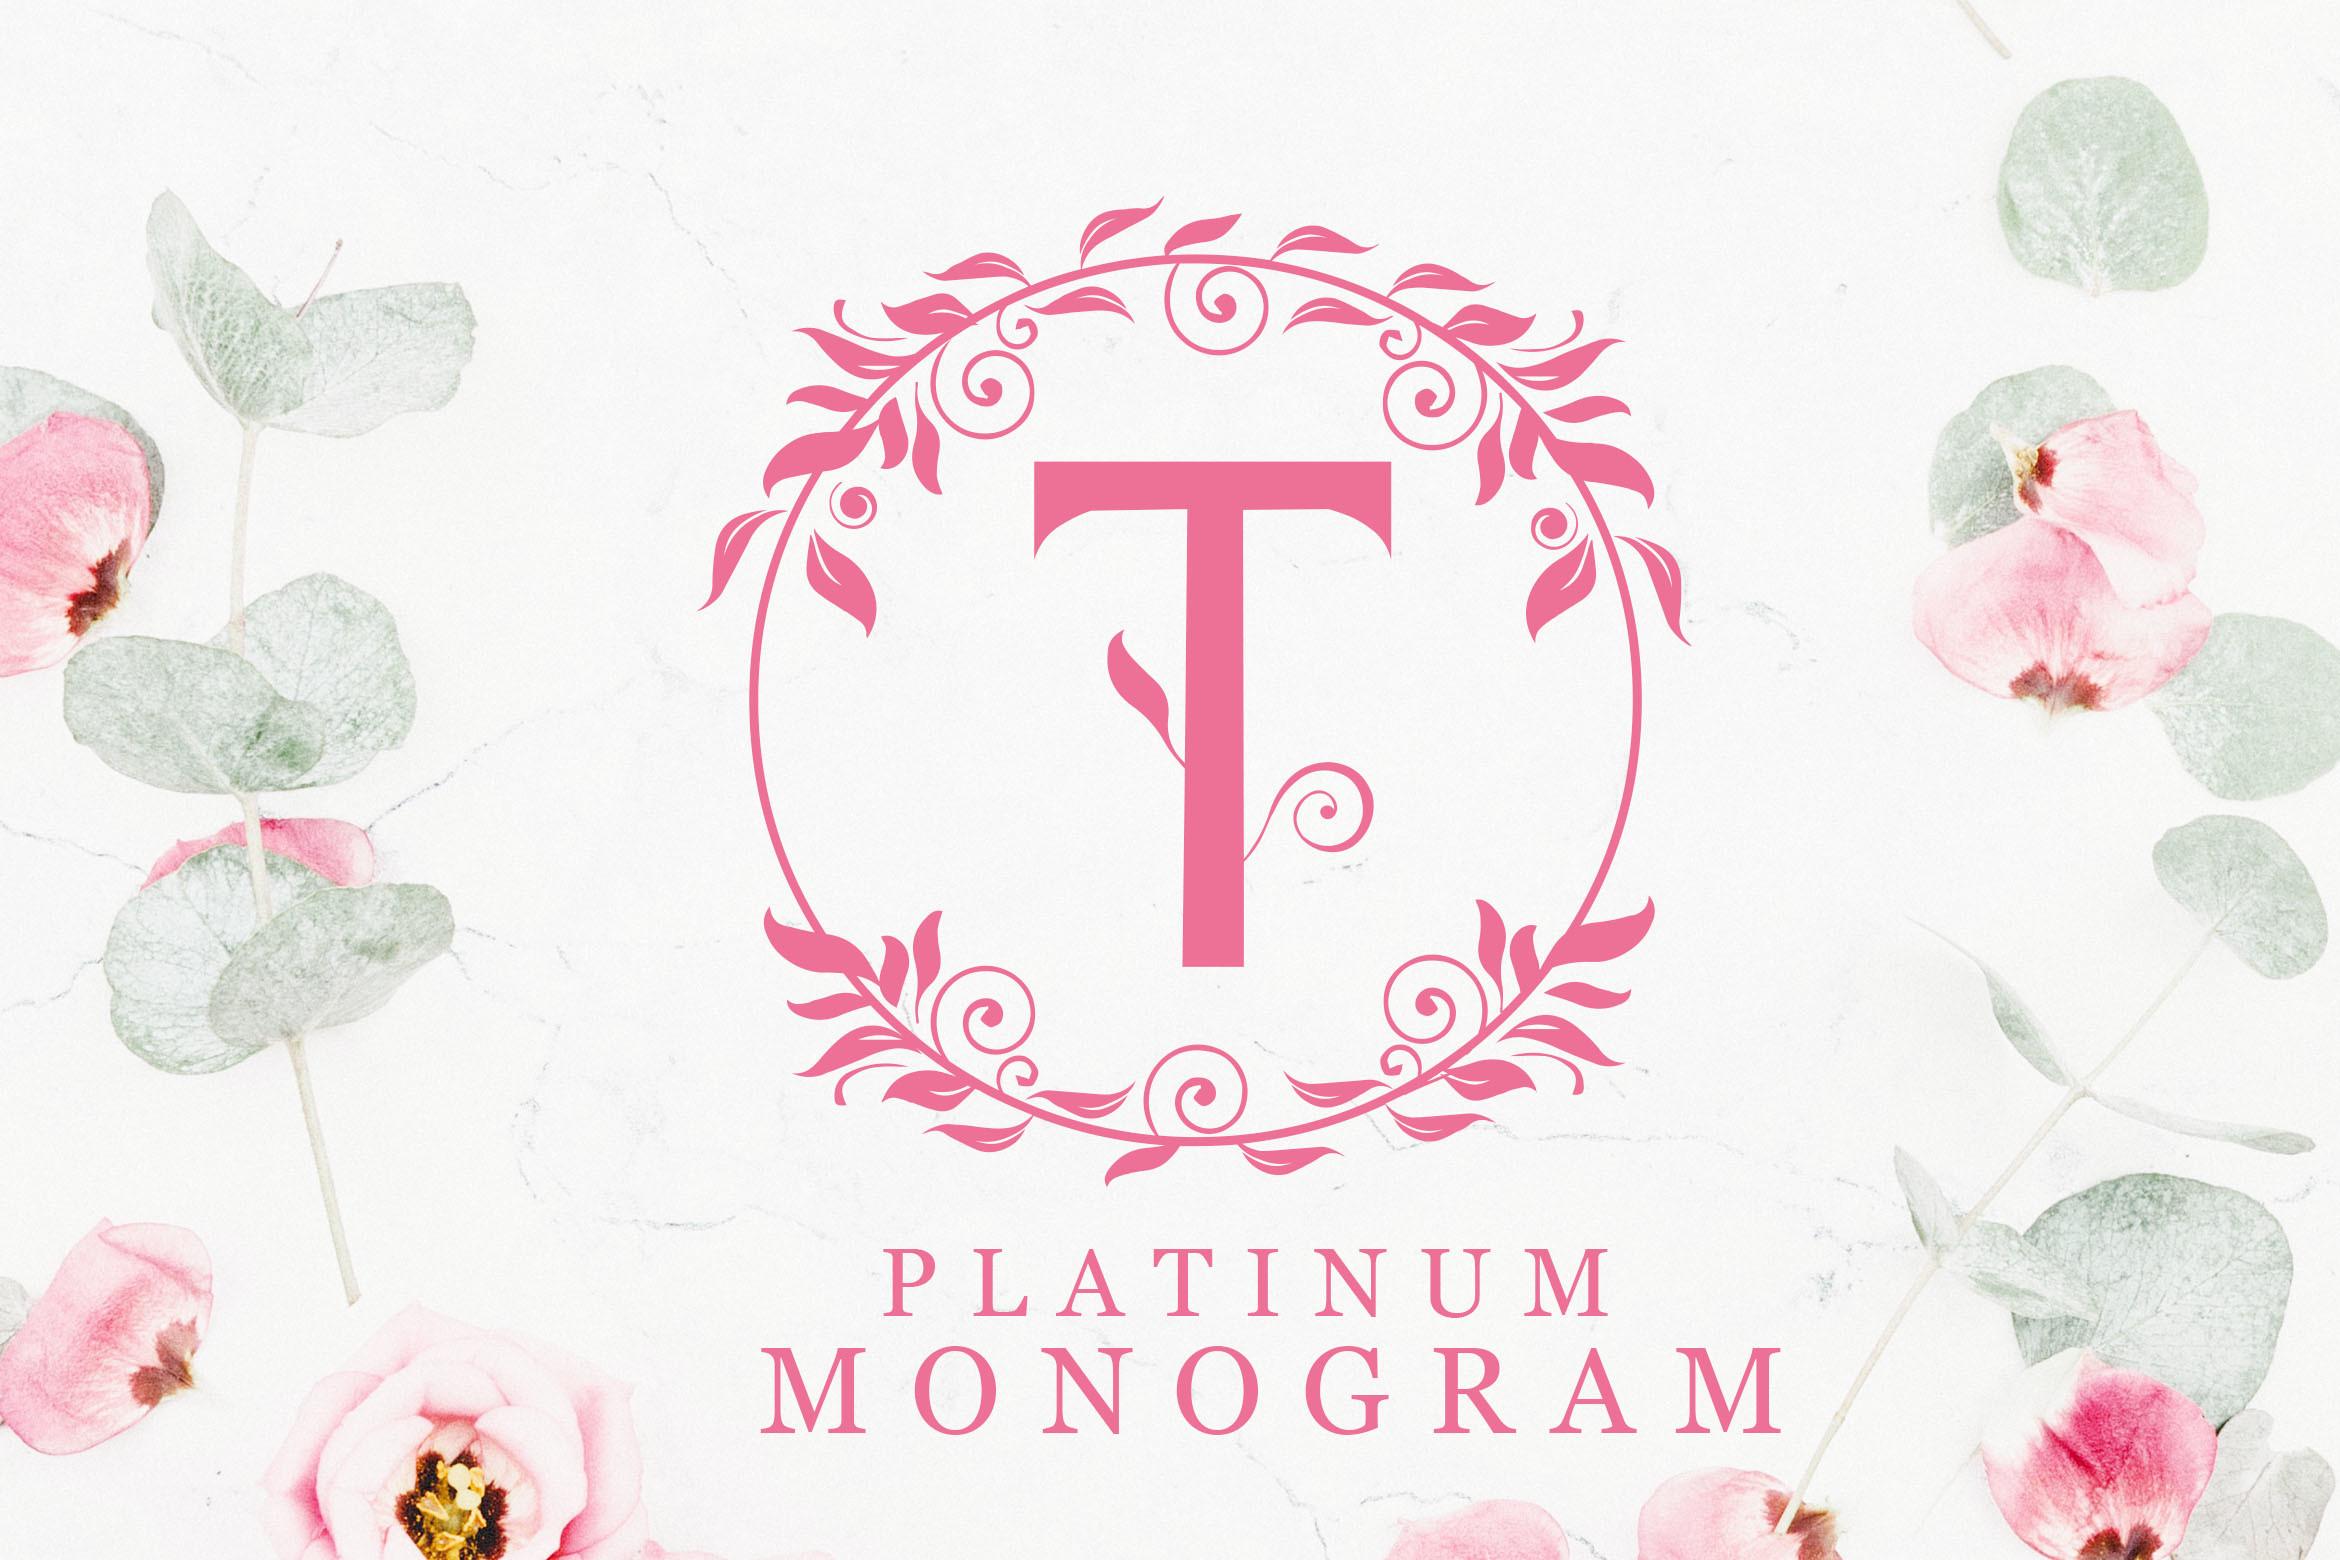 Platinum Monogram Font